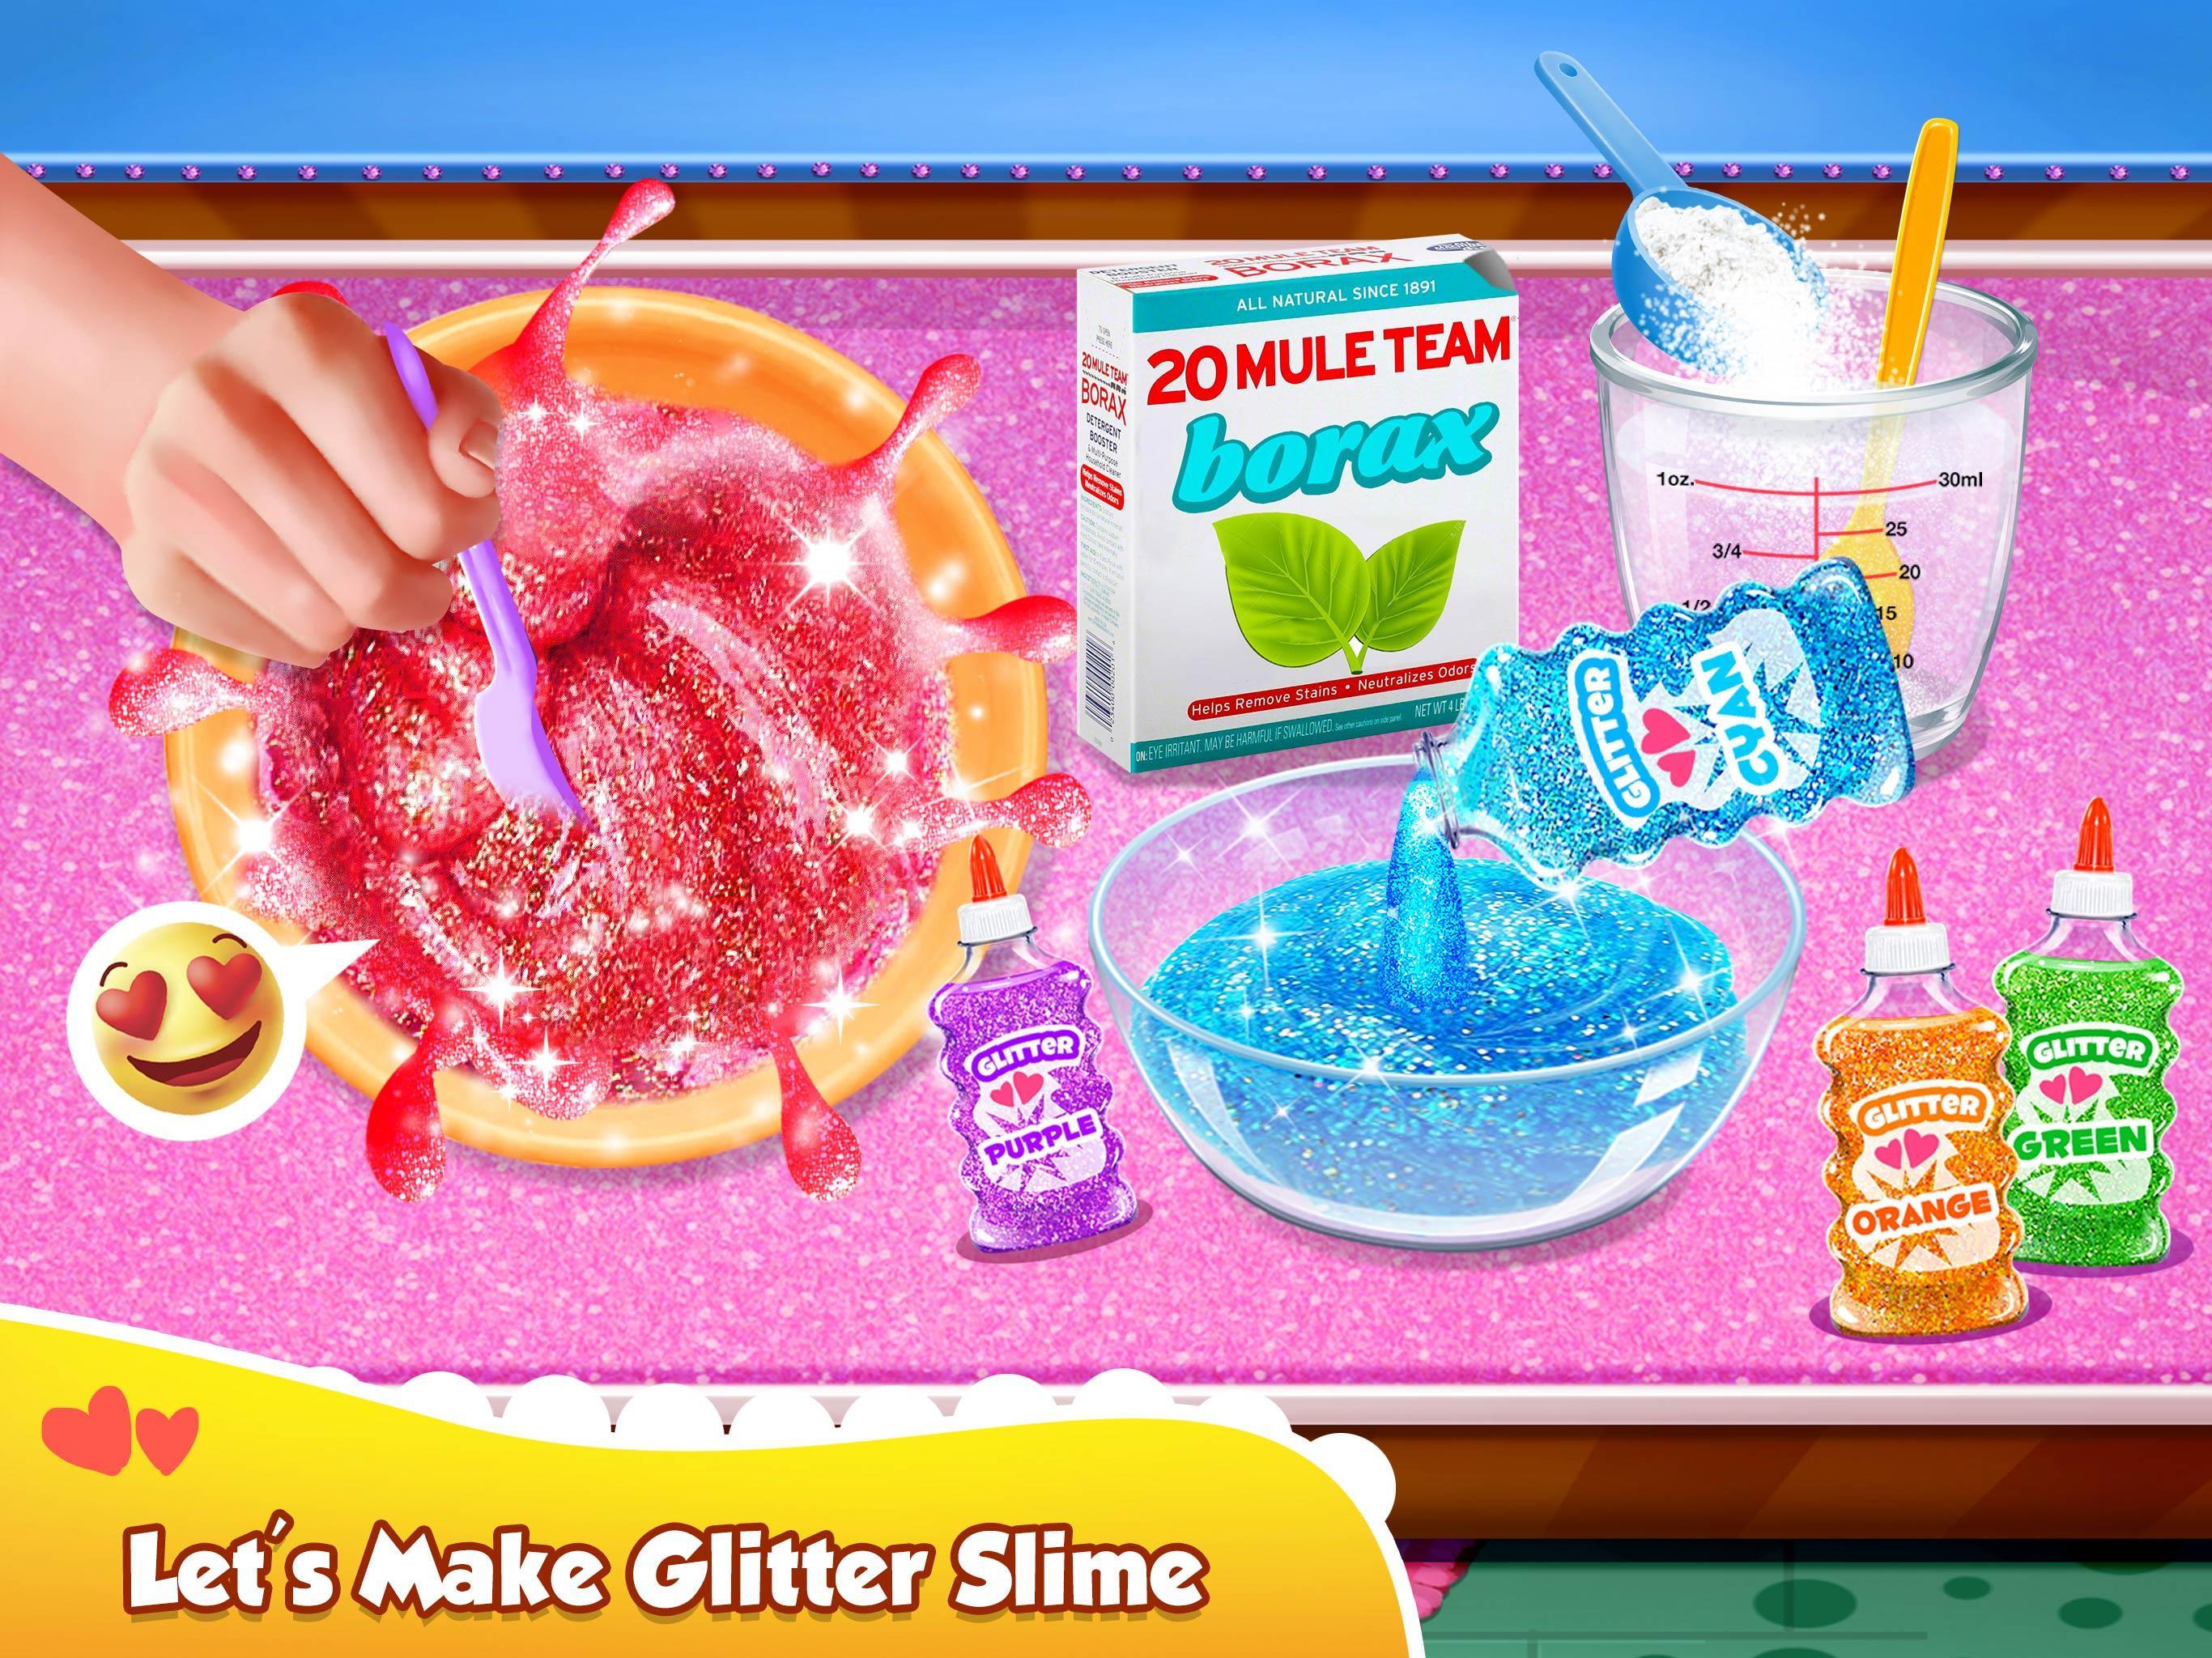 Screenshot 1 of Glitter Slime Maker - Gila Slime Fun 2.3